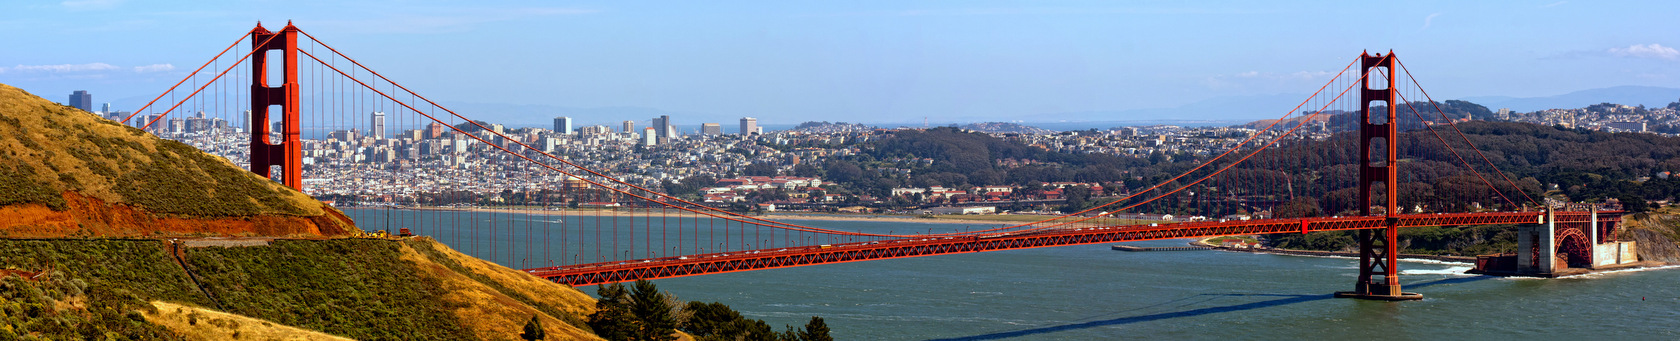 San Francisco - interesujące miasto do poznawania języka angielskiego